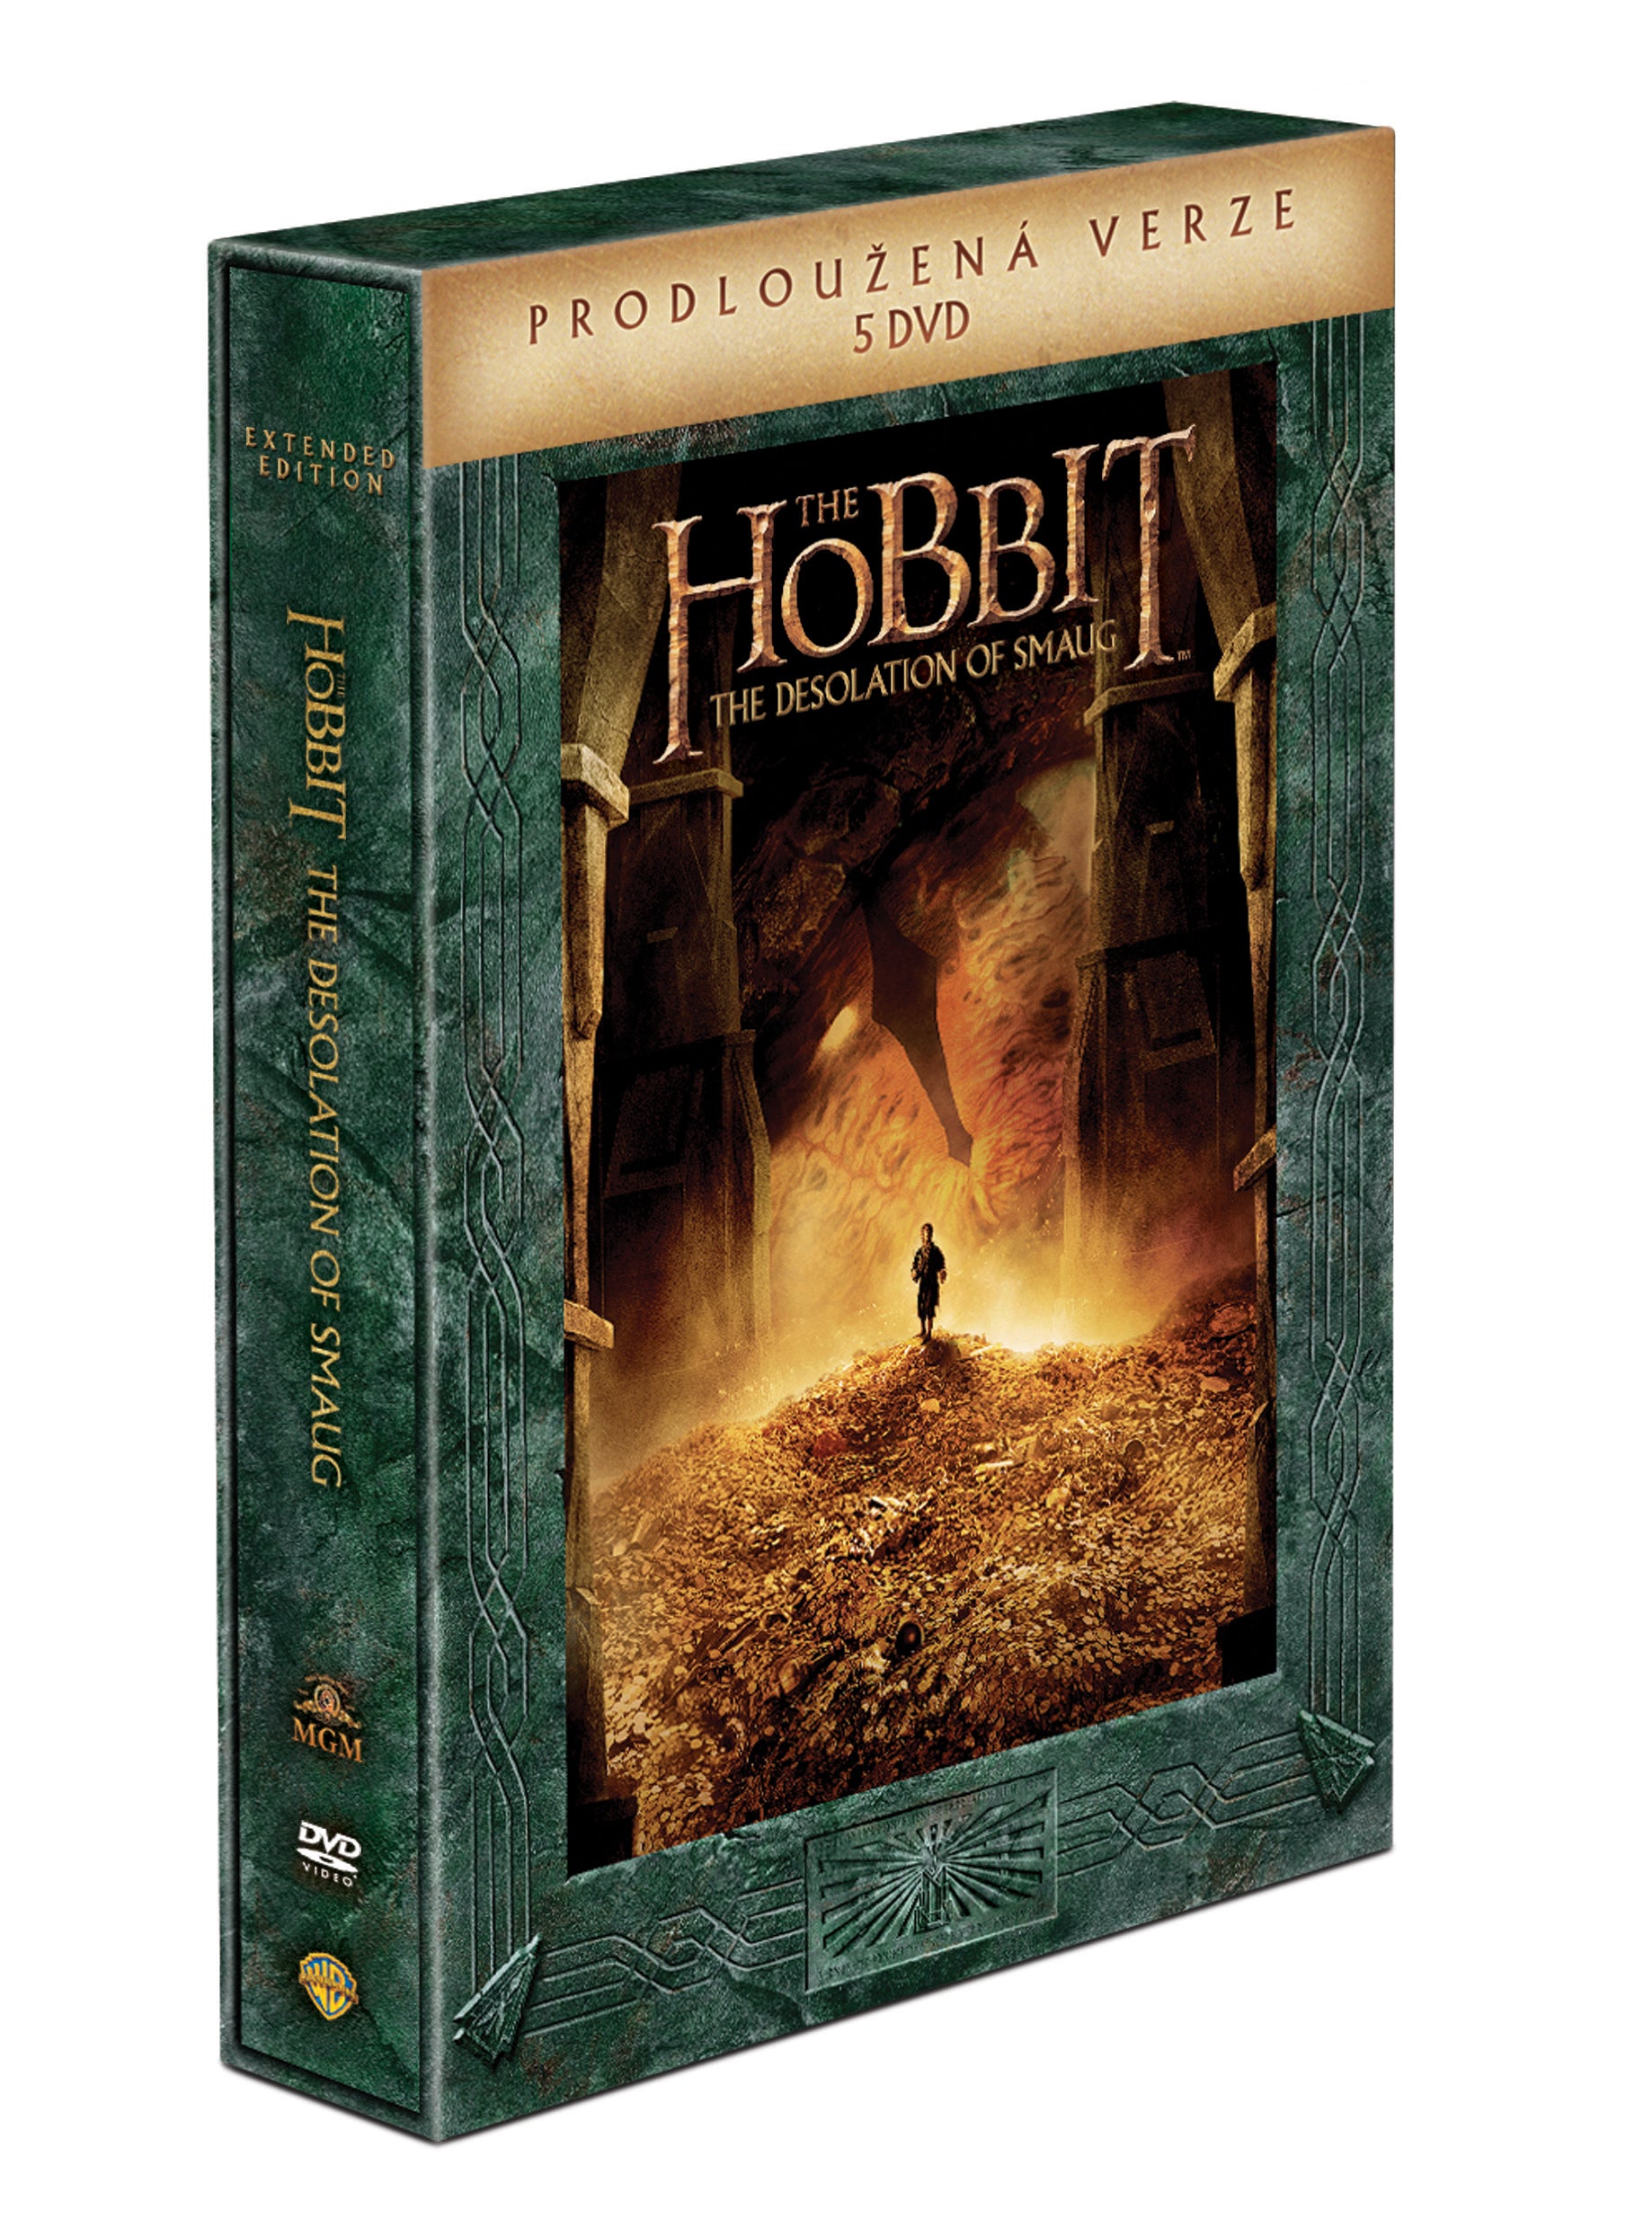 Hobit: Smakova draci poust - prodlouzena verze 5DVD / The Hobbit: The Desolation of Smaug - Extended Edition